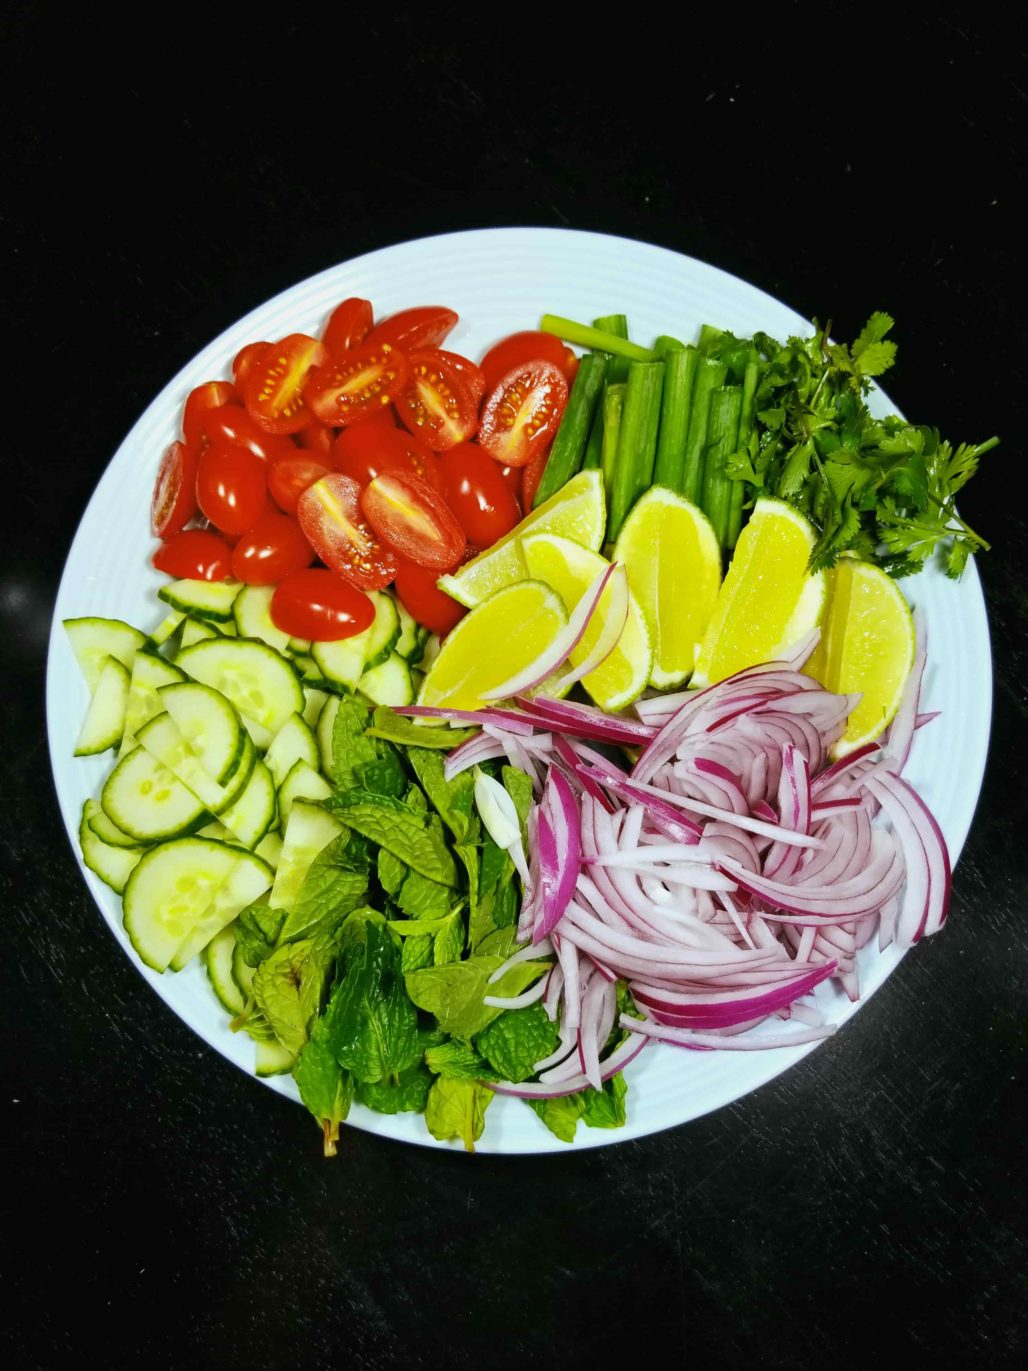 Thai beef salad ingredients